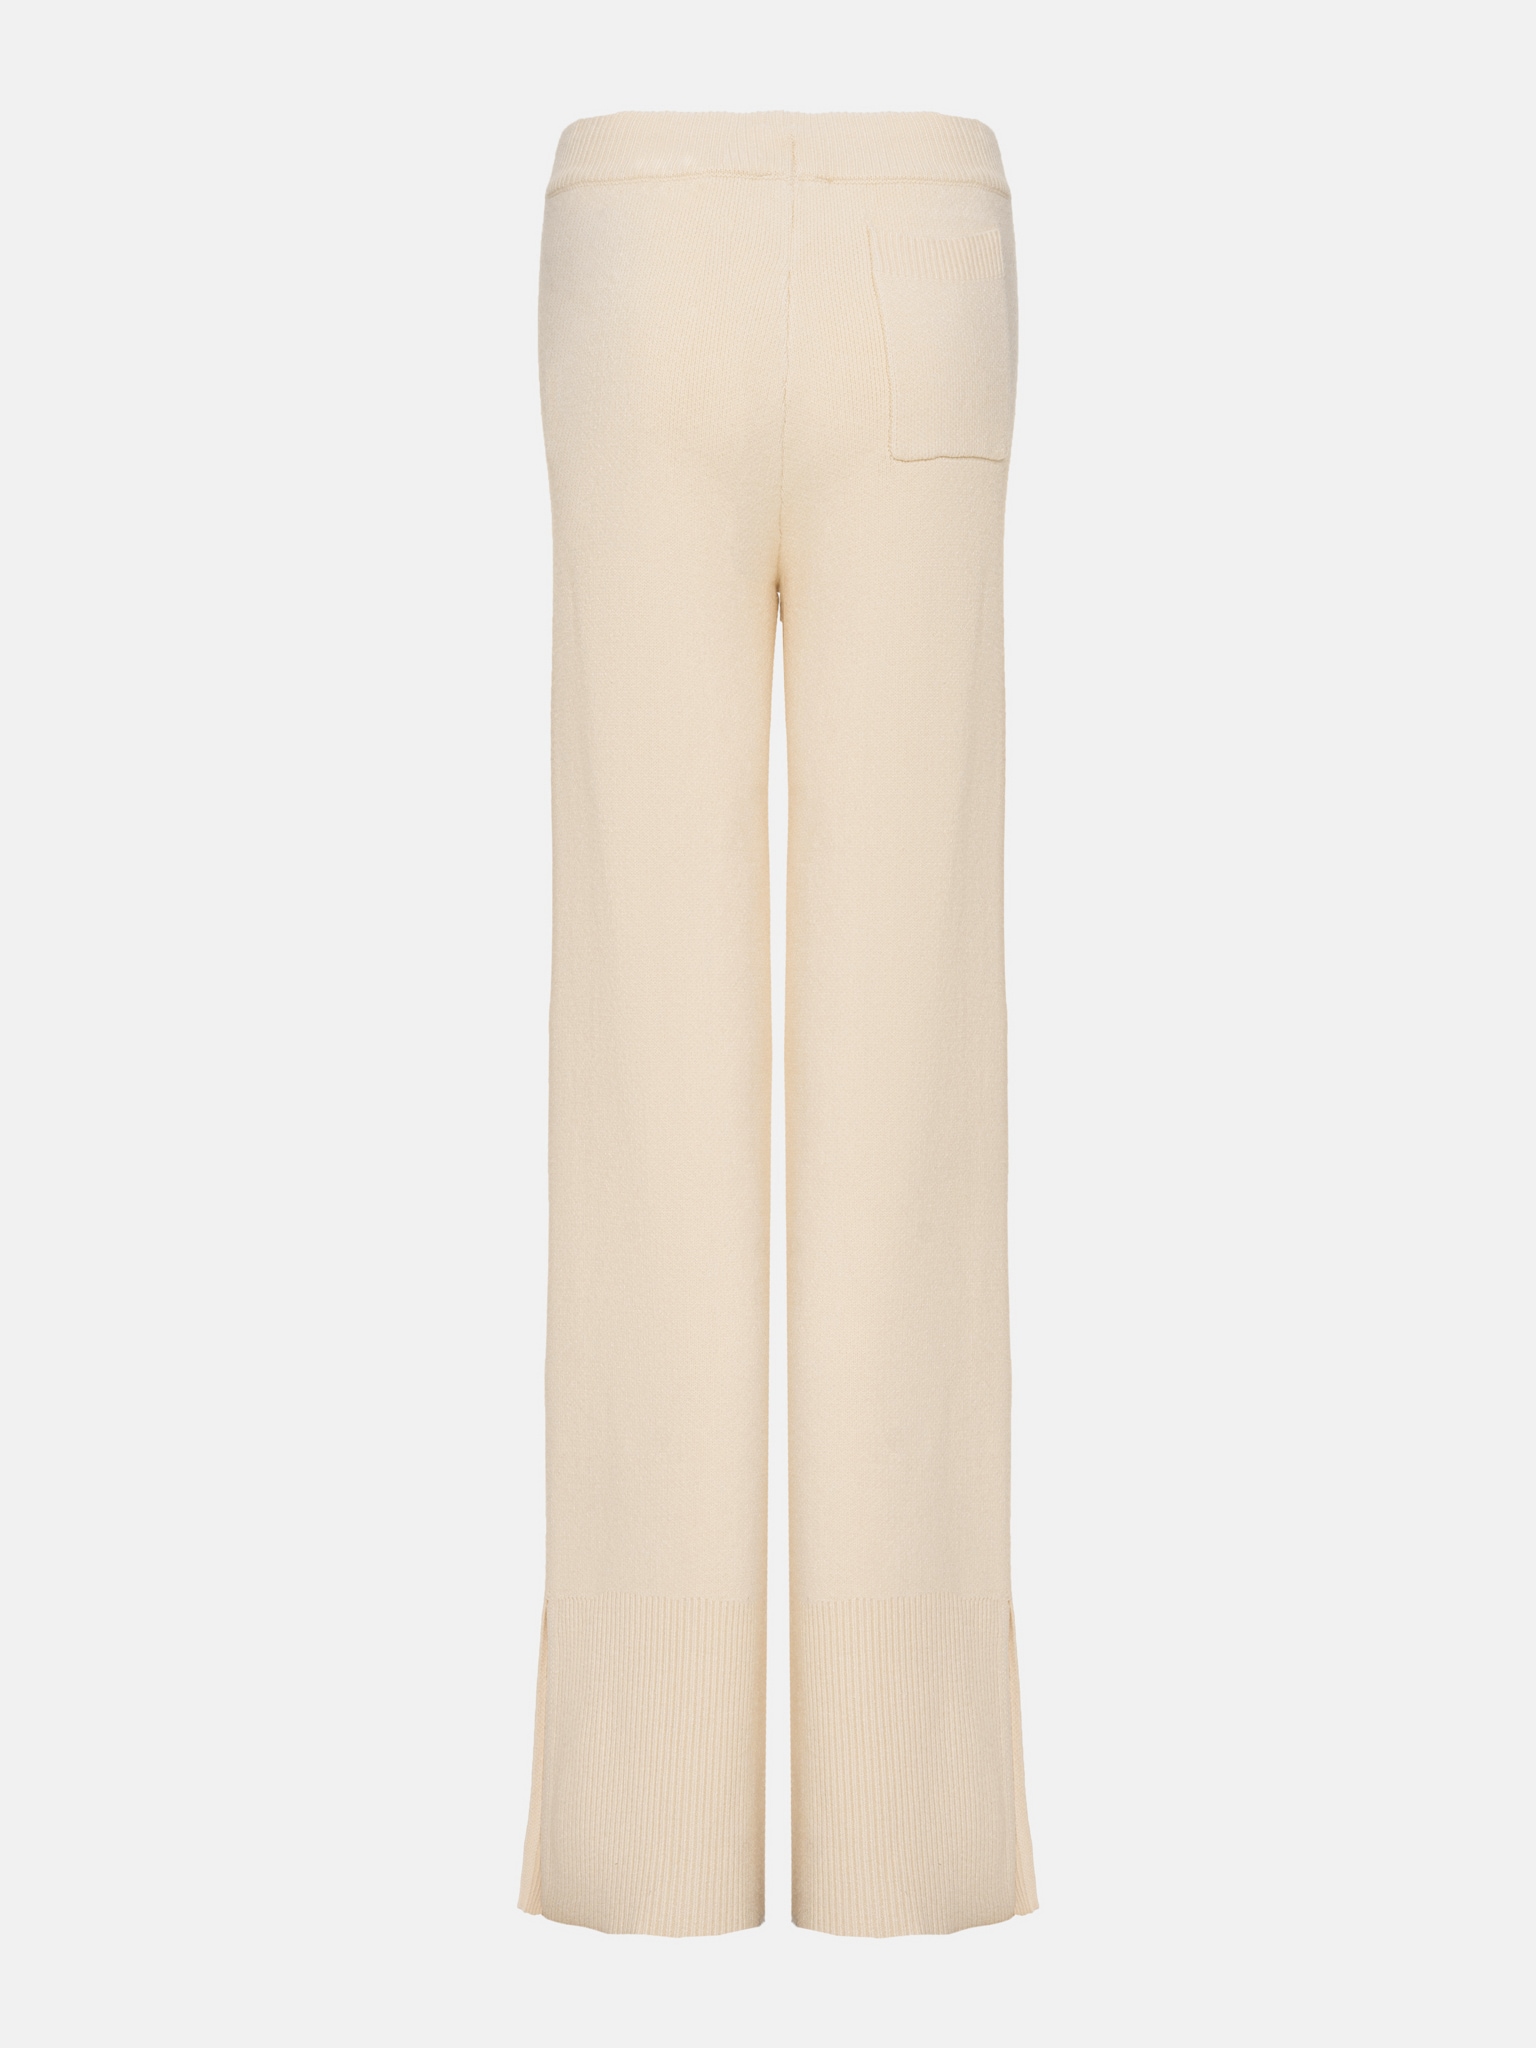 Трикотажные брюки с завязкой на талии и разрезами